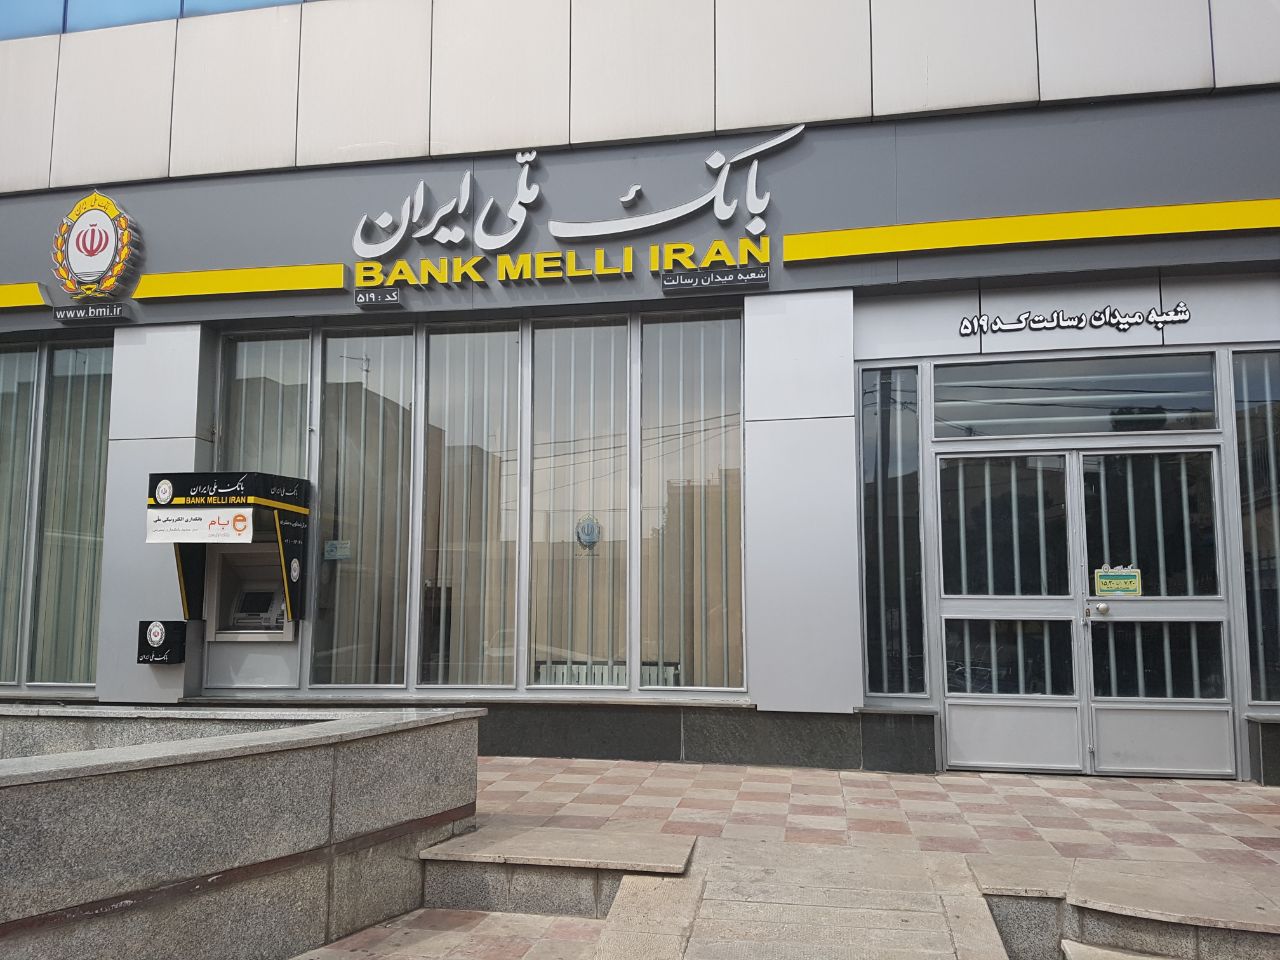 تکمیل سبد دارویی کشور به پشتوانه همه جانبه بانک ملی ایران